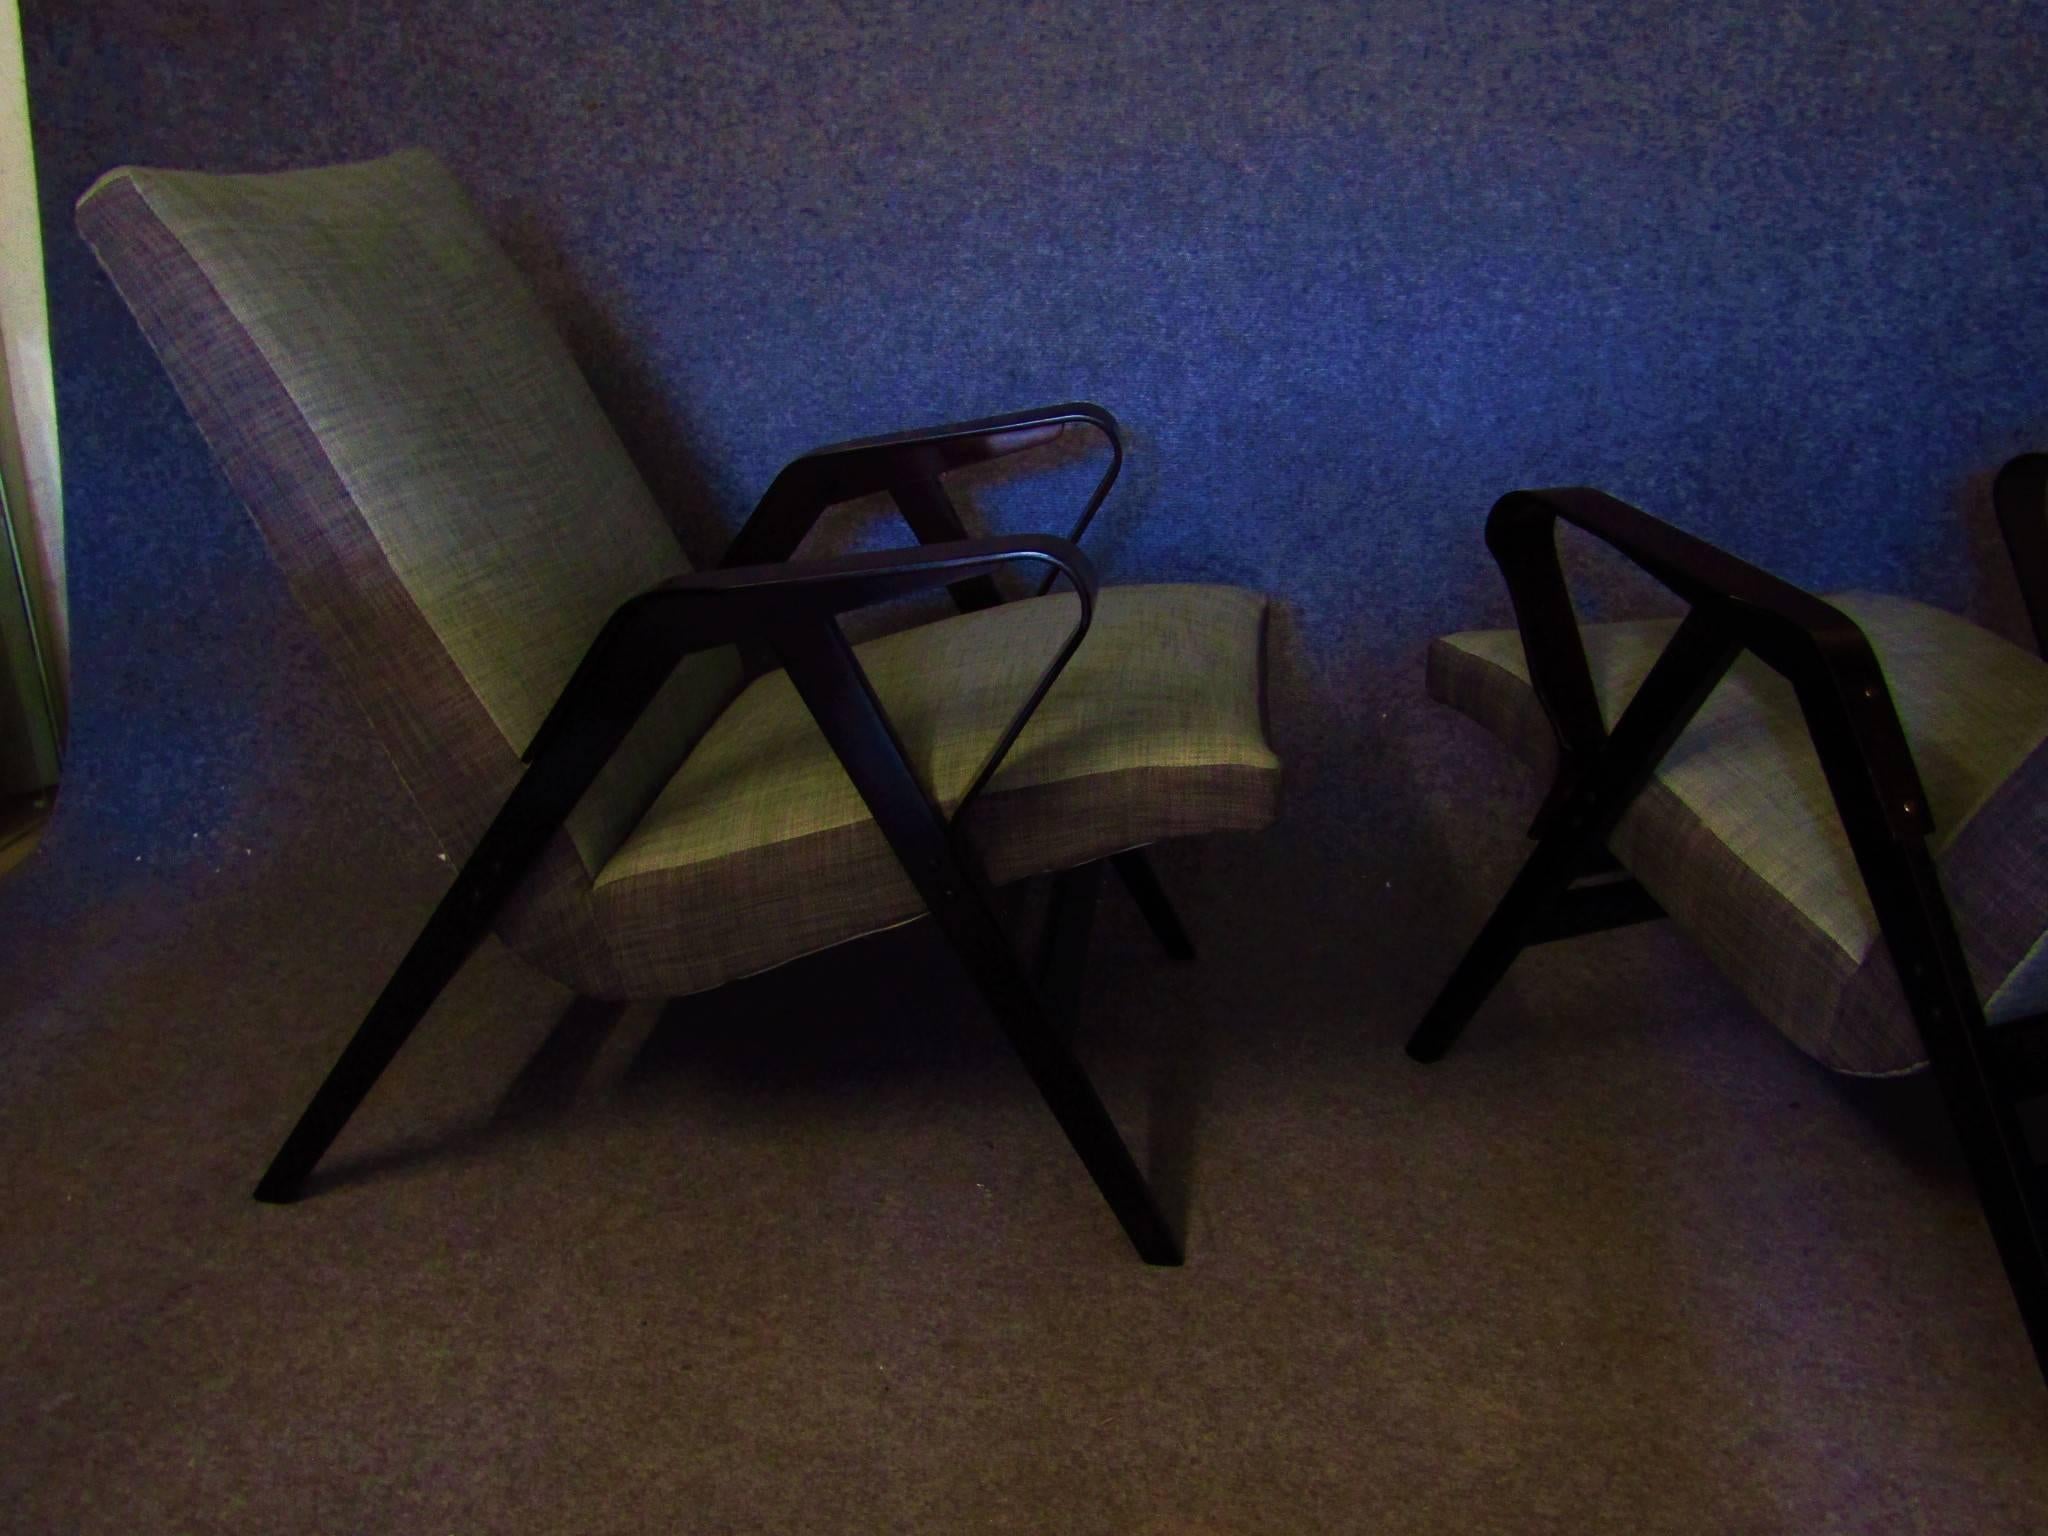 Ein tschechischer Sessel aus gebogenem Sperrholz, hergestellt von Tatra. Seltenes Beispiel für den tschechischen modernen Stil der 1950er Jahre. Neu gepolstert, vollständig restauriert.

Wir bieten einen Versand von Tür zu Tür. Weltweit. Bitte